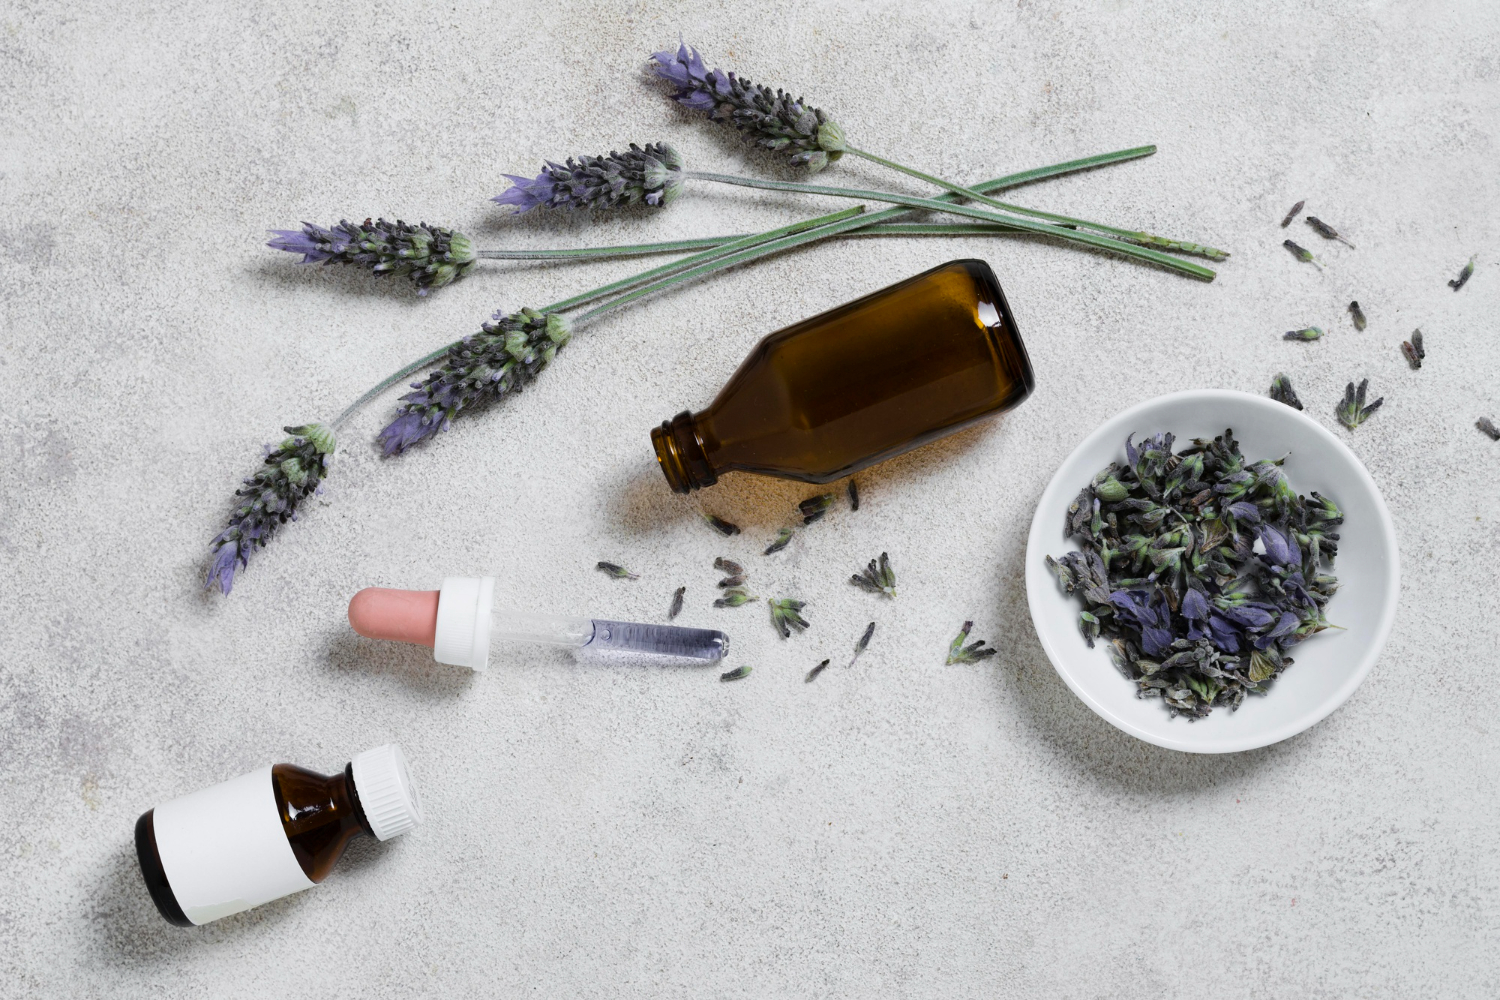 Manfaat Lavender untuk Wajah dan Kulit